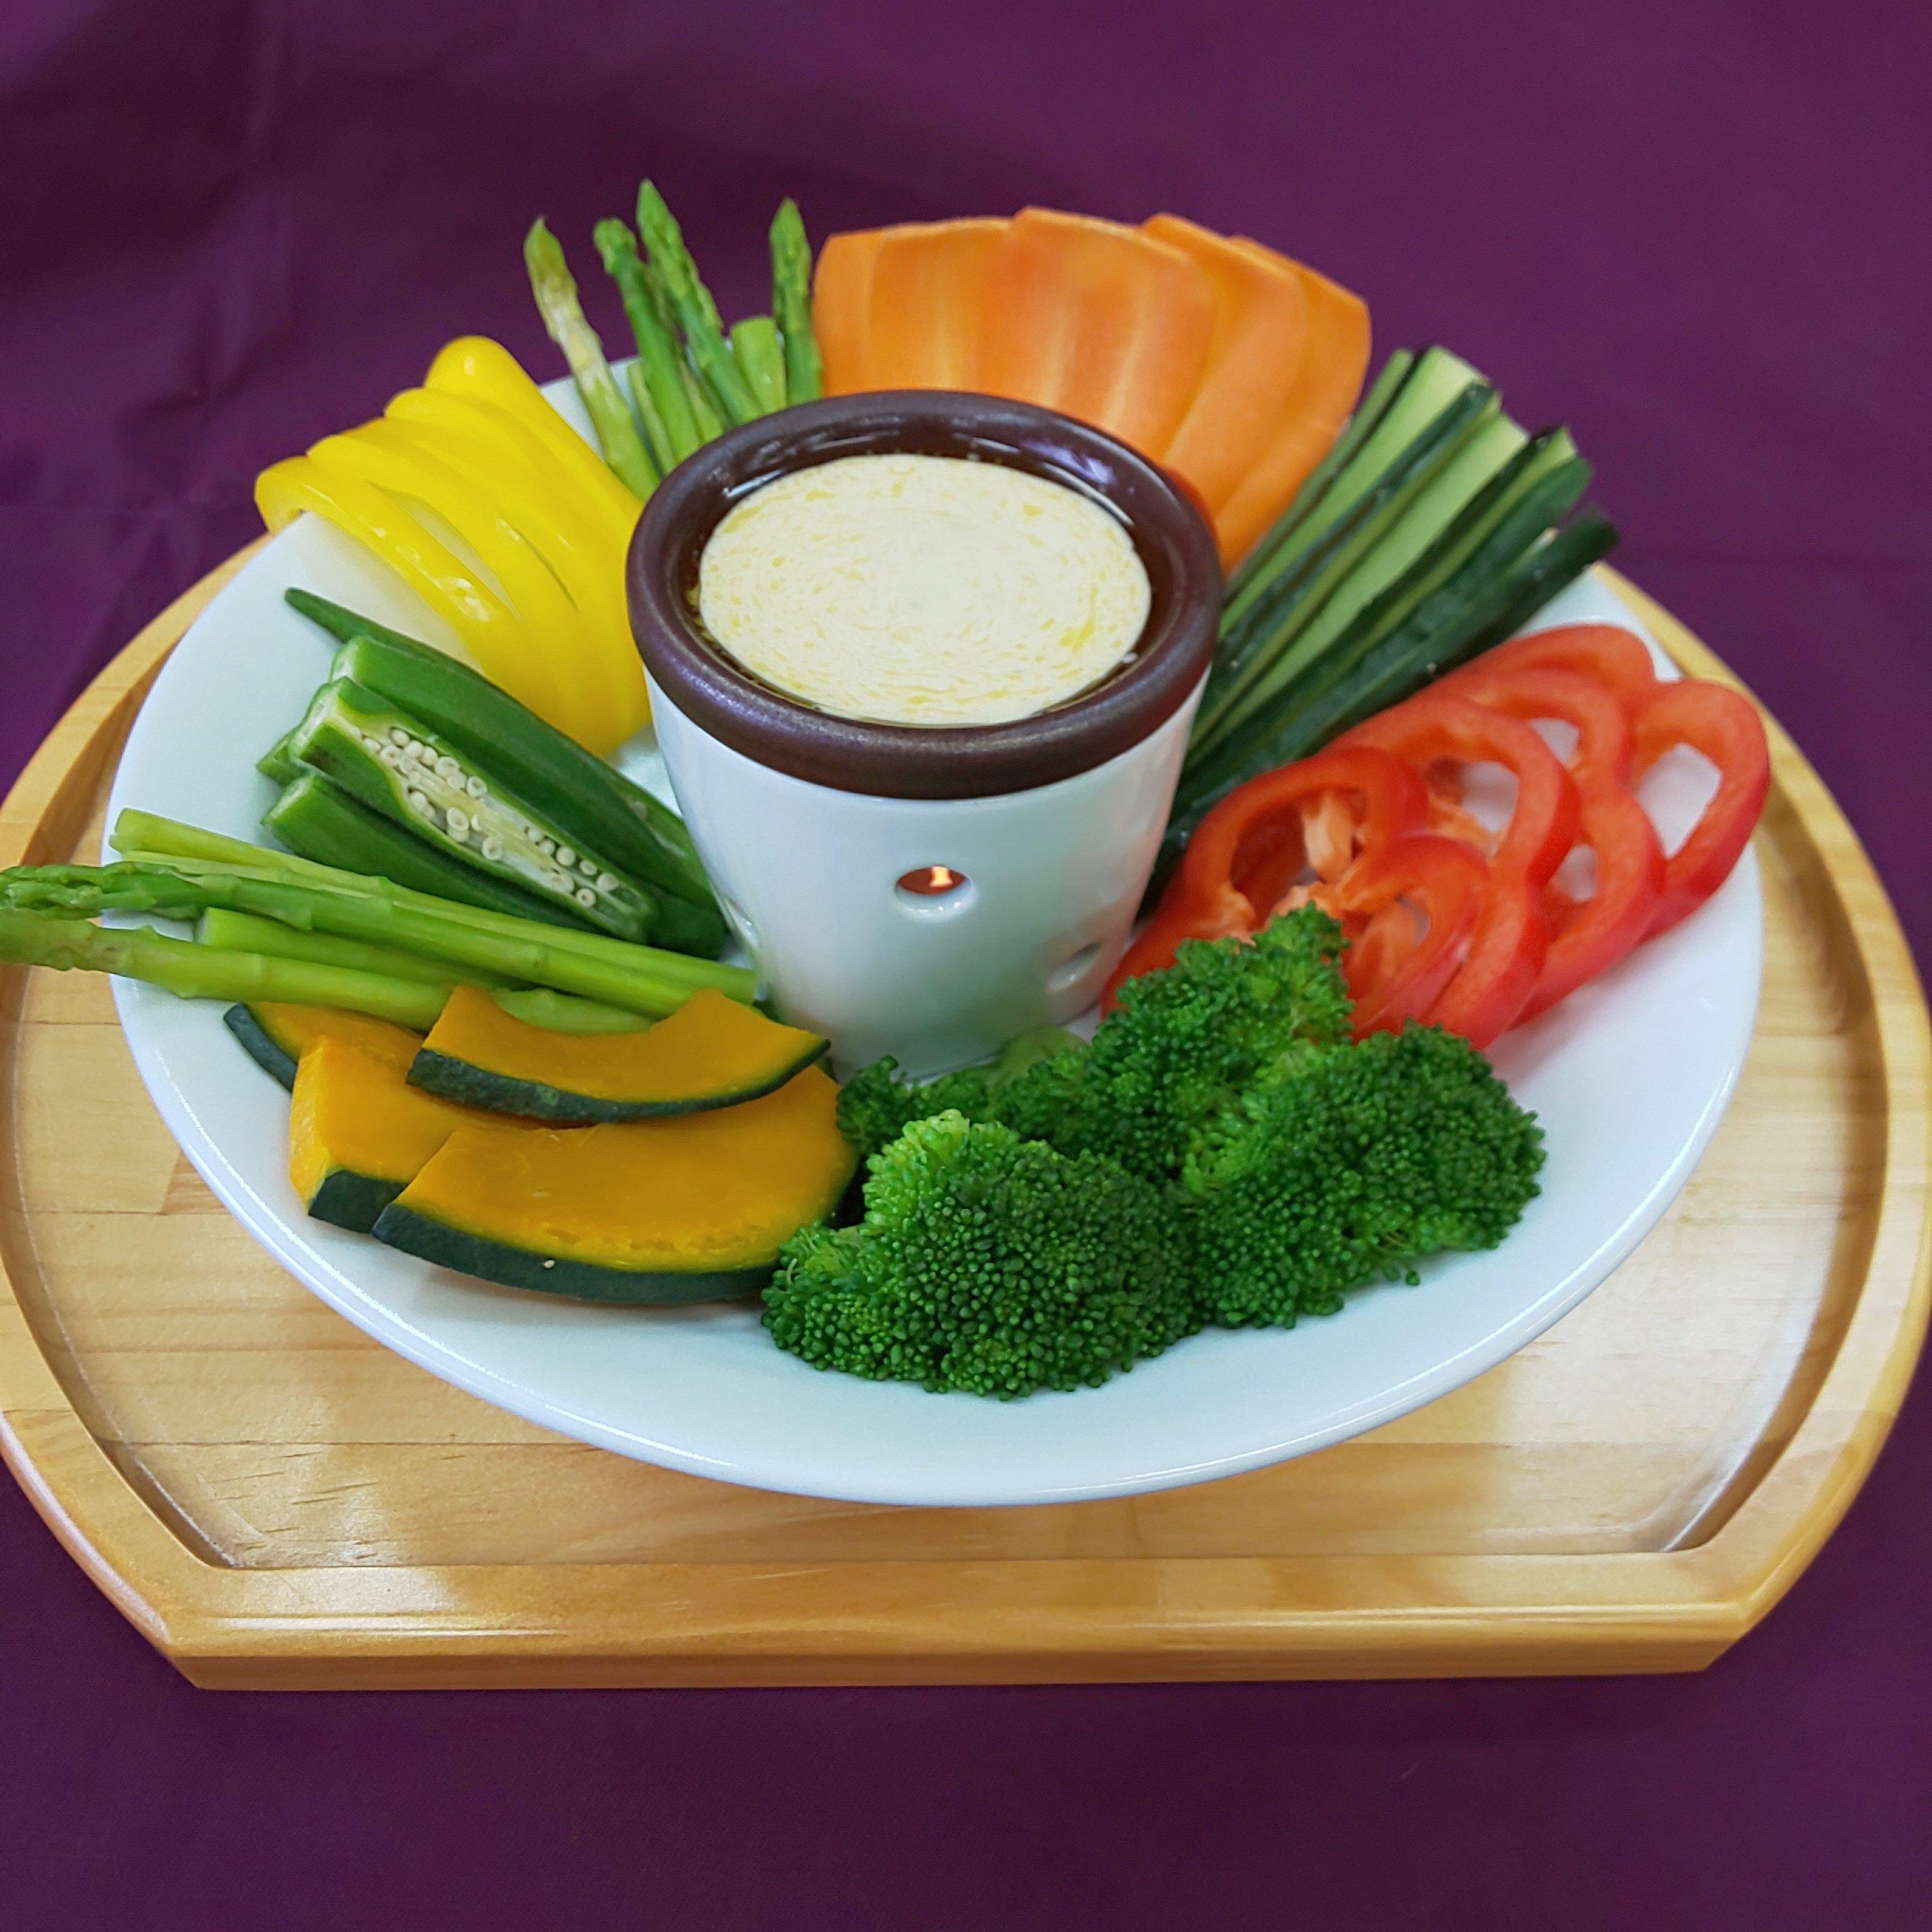 お野菜を手軽に食べられるバーニャカウダ用の有田焼のポットです。